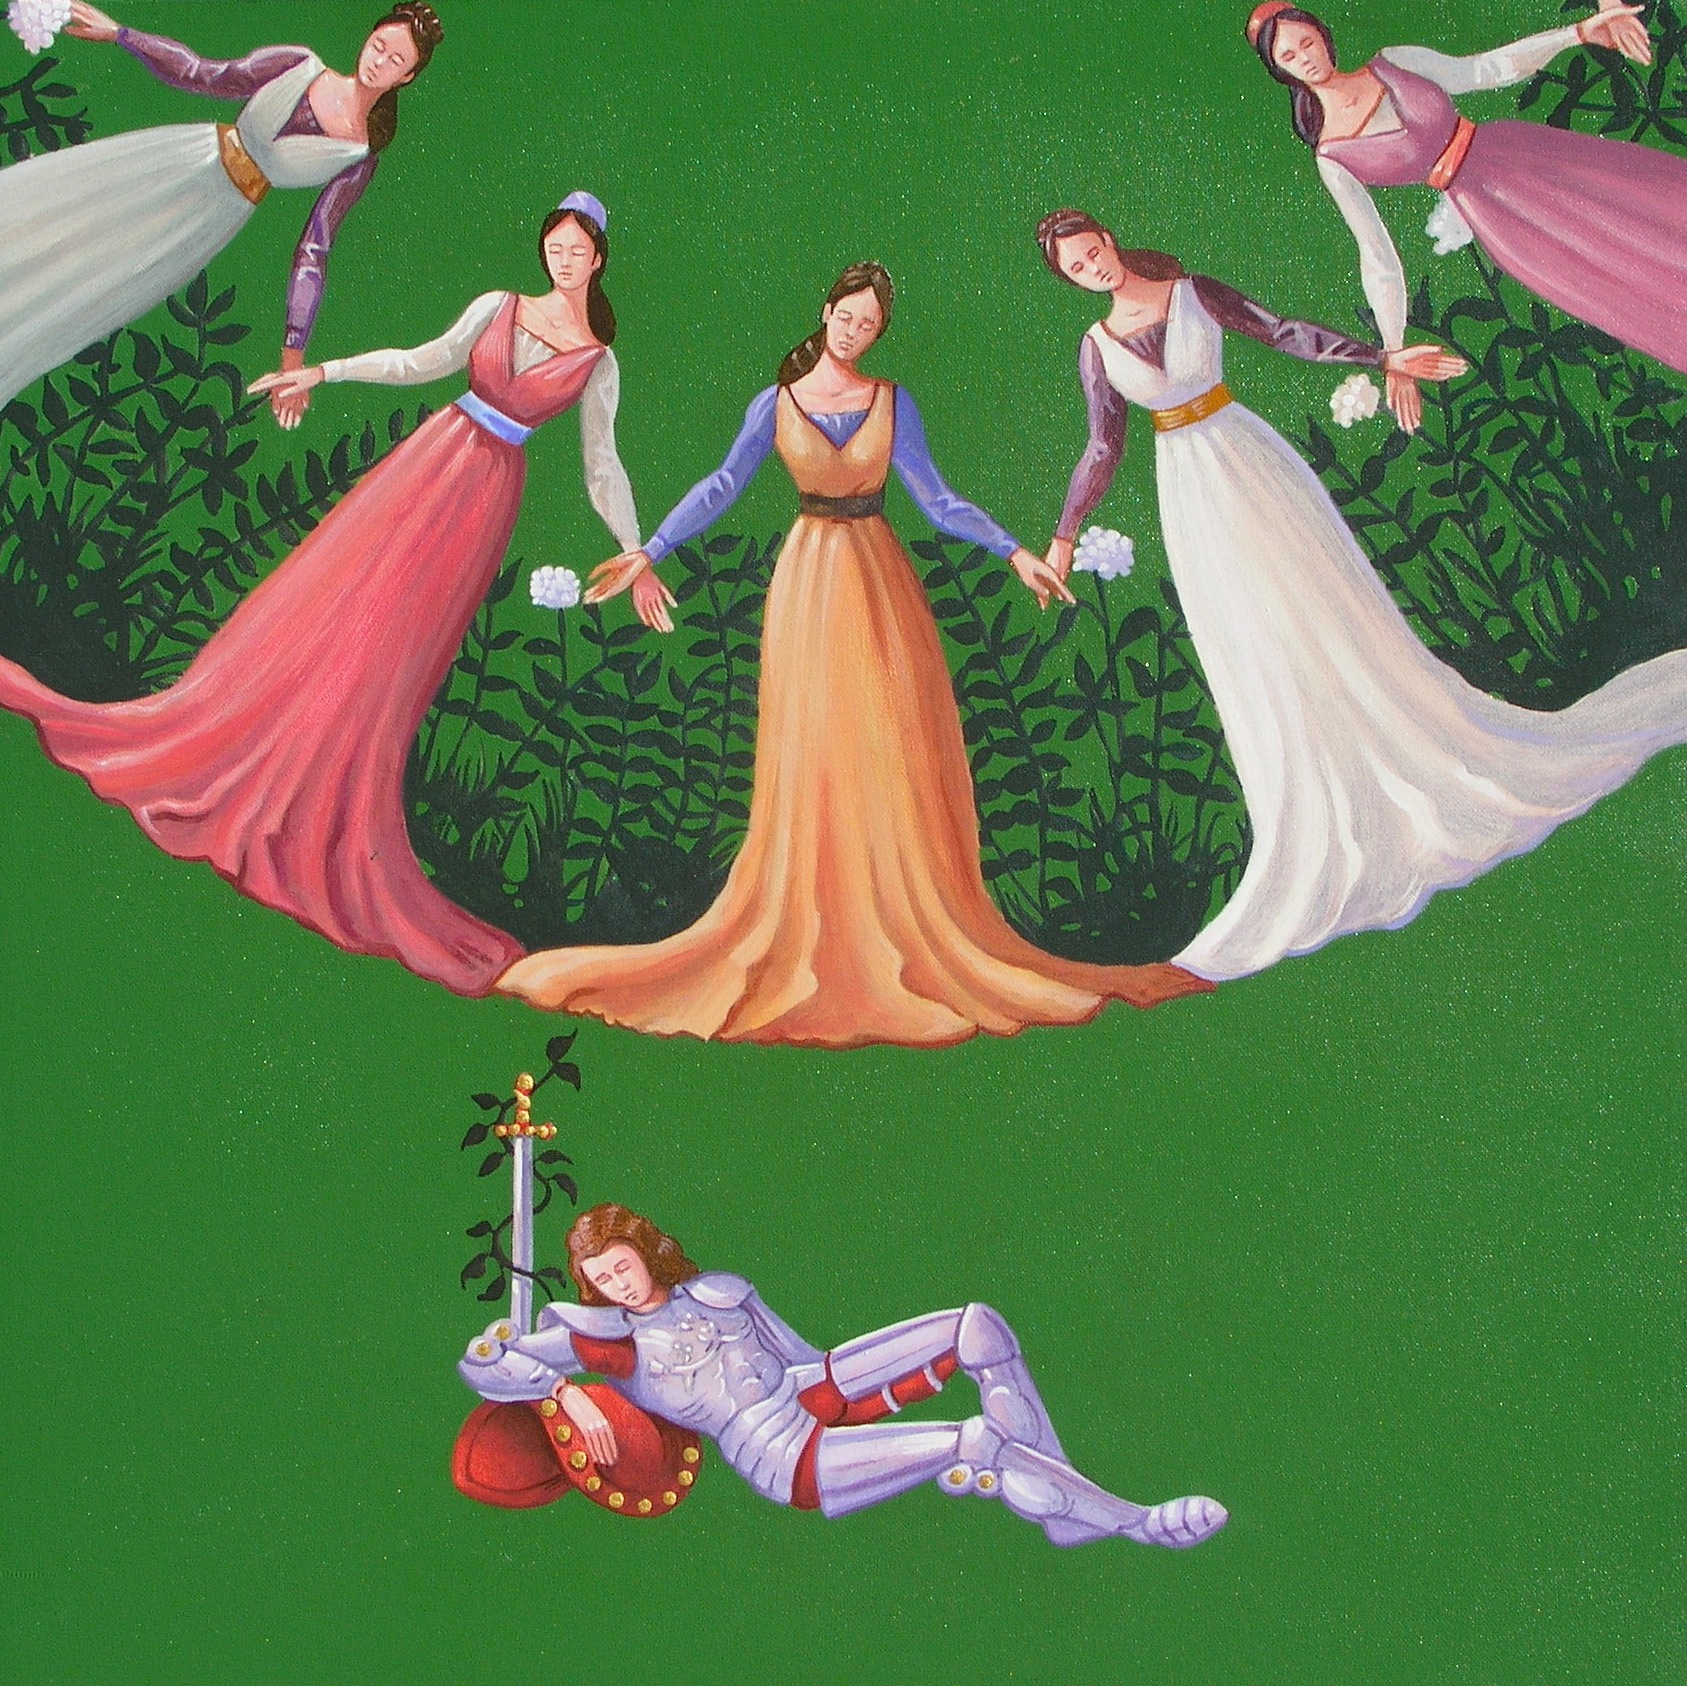 Vanni Cuoghi, Cinque volte in sogno, acrilico e olio su tela, 45x45 cm., 2013